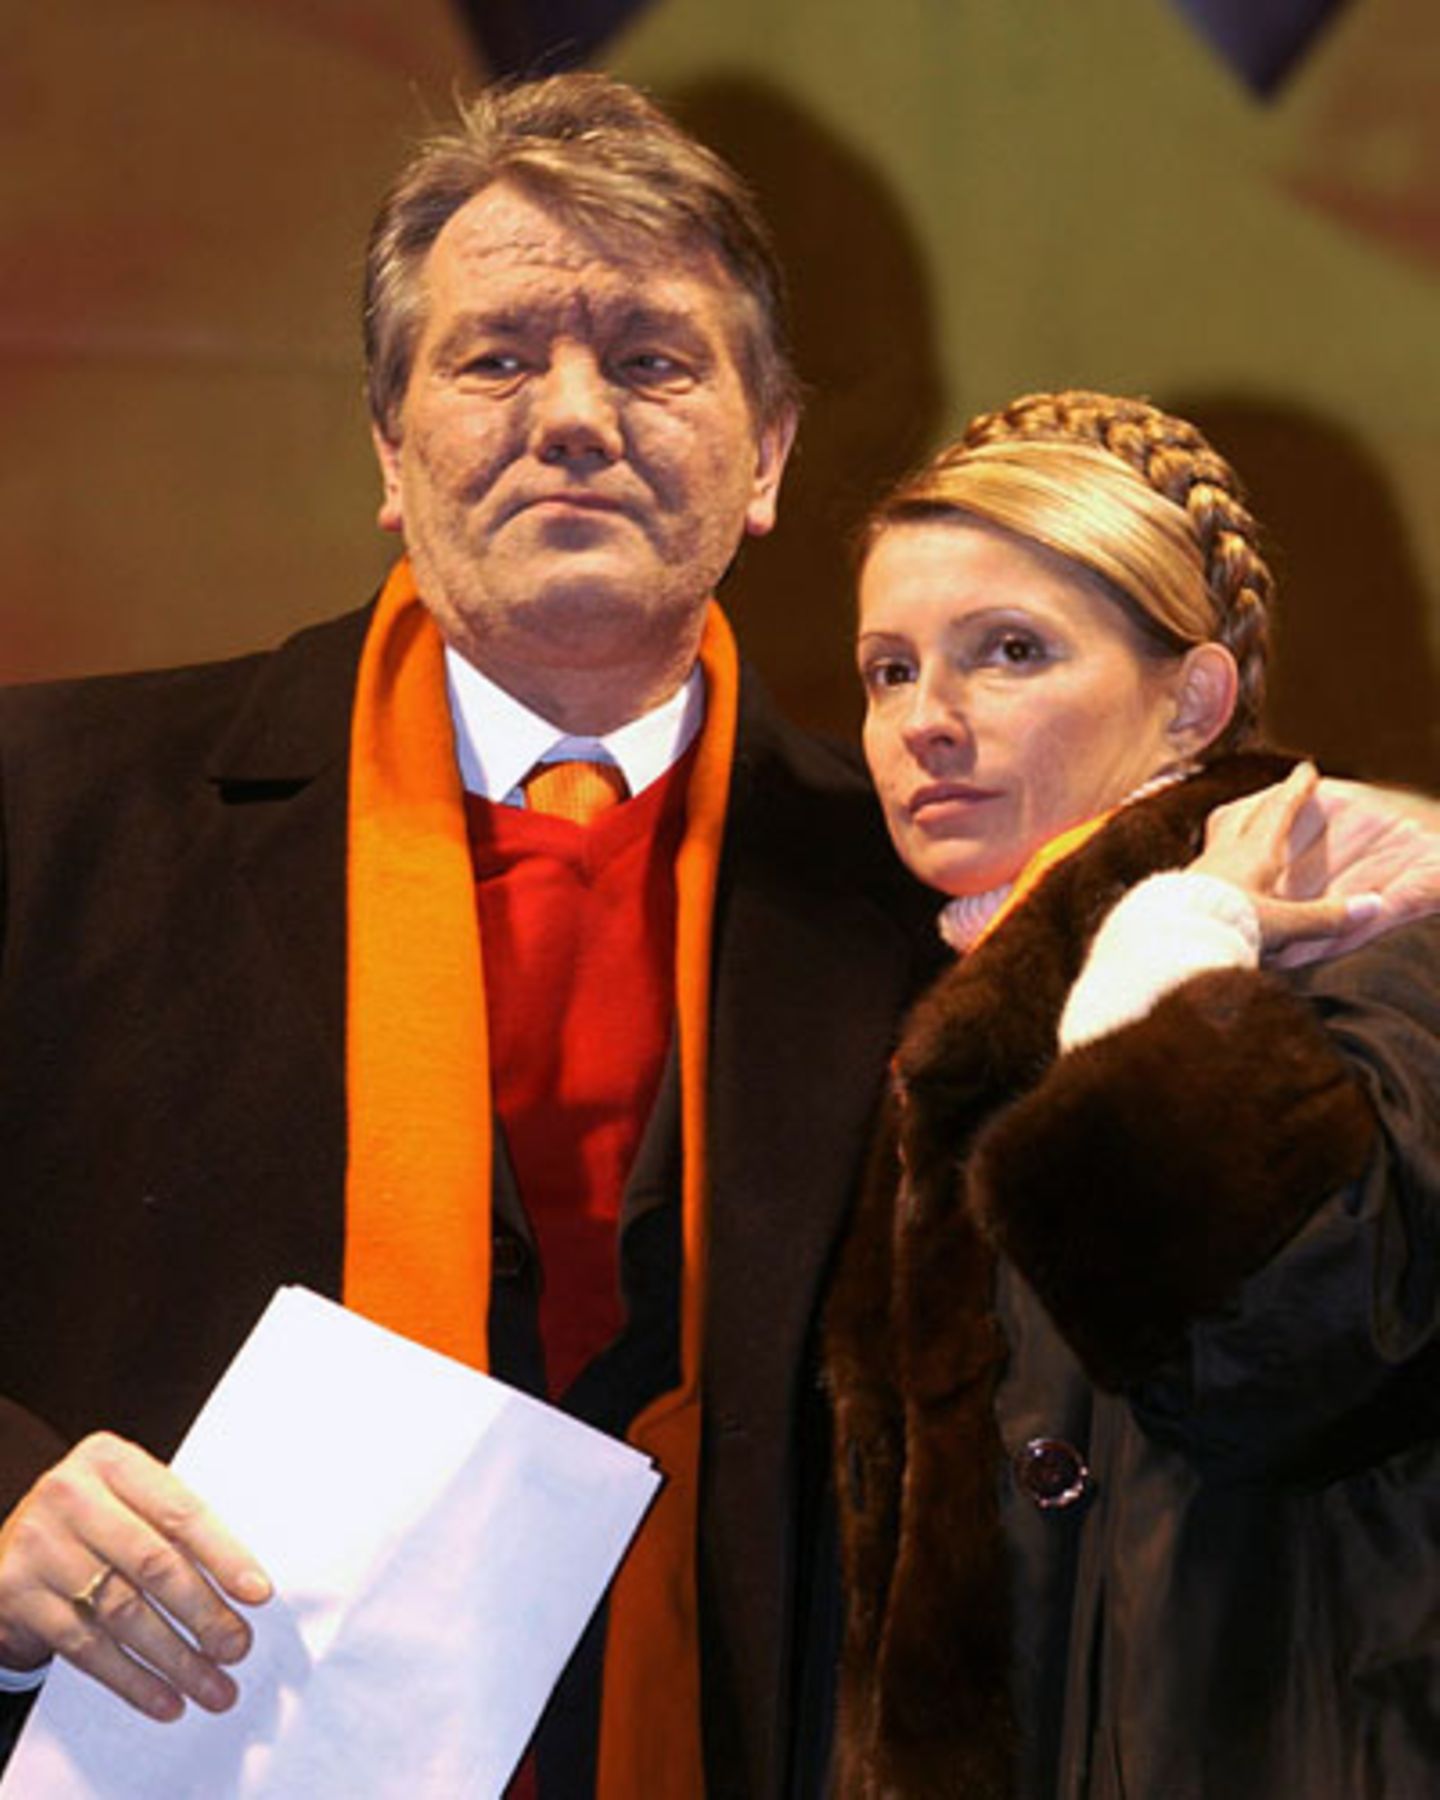 Zusammen mit Wiktor Juschtschenko wurde sie zum Gesicht der Orangenen Revolution von 2004. Im Jahr darauf wurde sie Premierministerin unter Präsident Juschtschenko. Wenige Monate später entließ dieser die gesamte ukrainische Regierung, auch seine Weggefährtin Timoschenko.